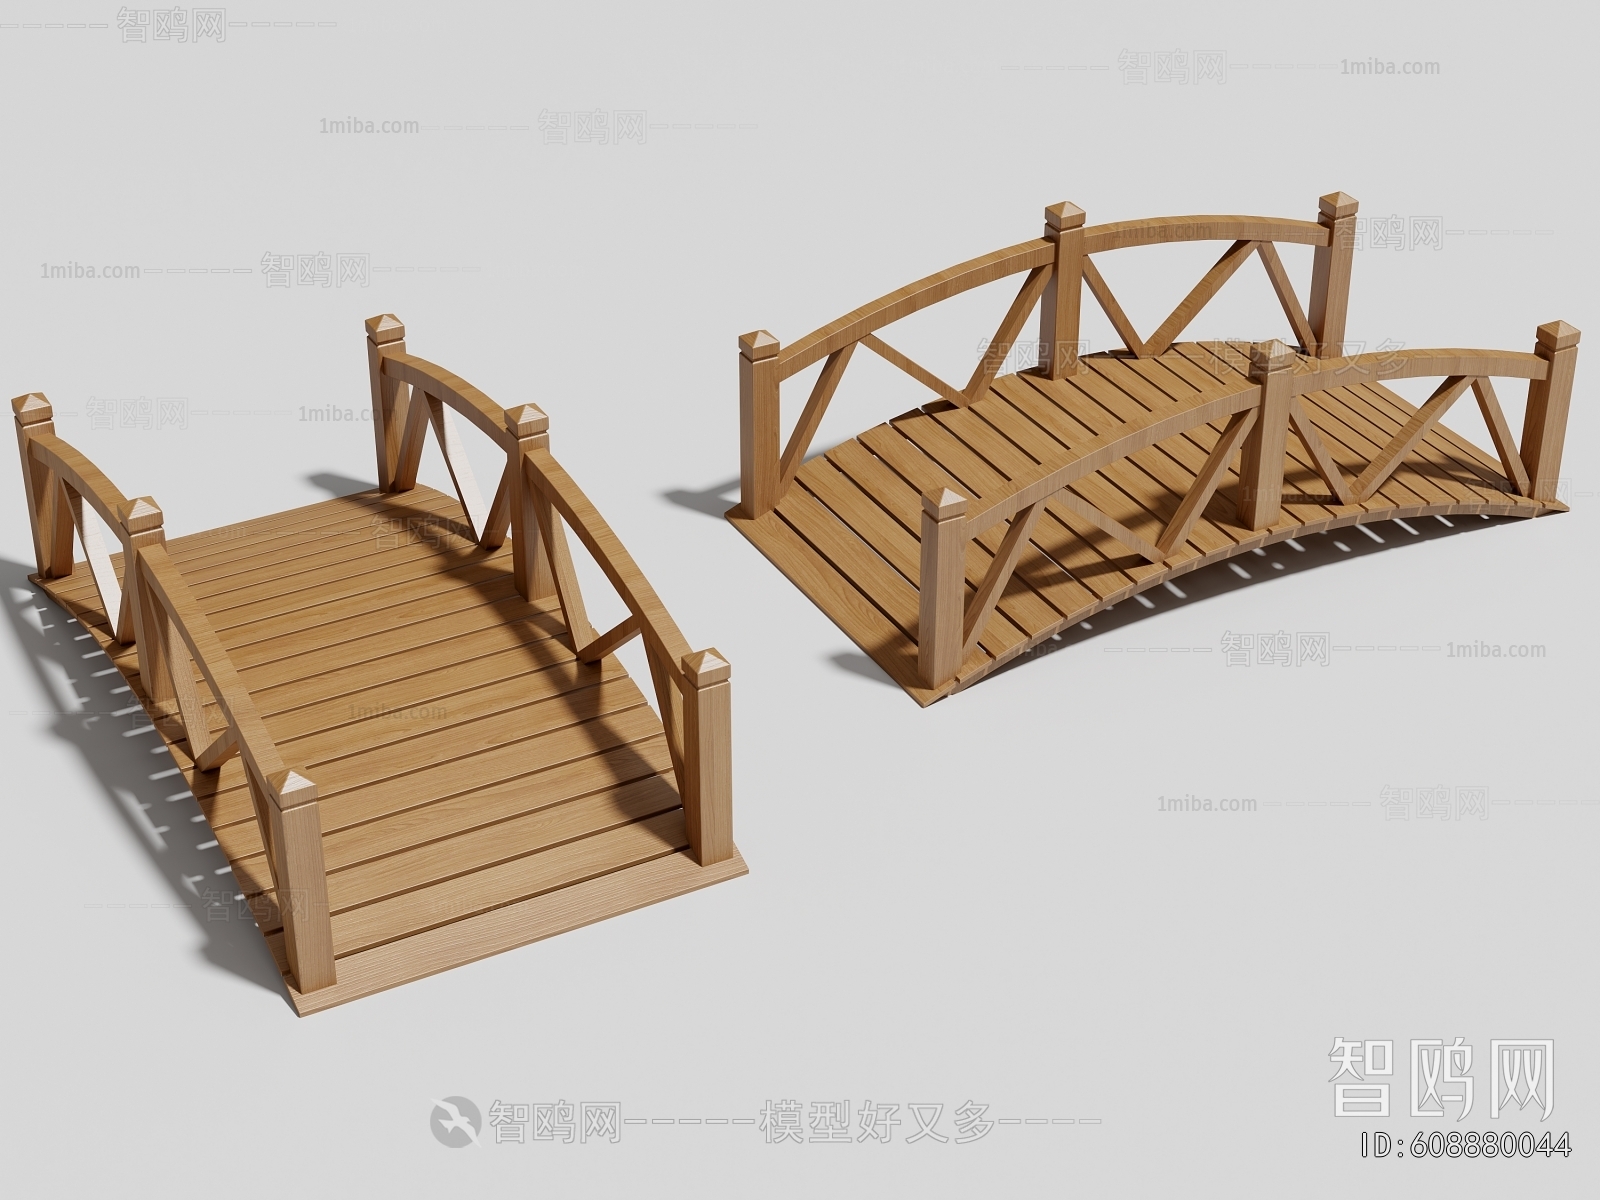 New Chinese Style Bridge